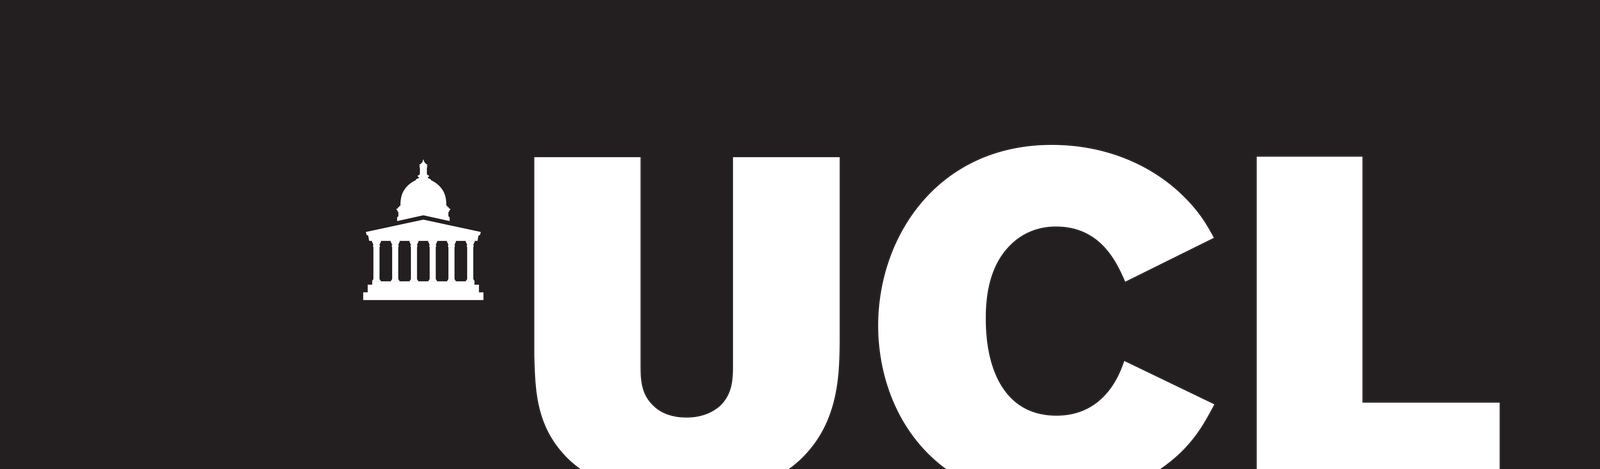 logo de UNC Charlotte